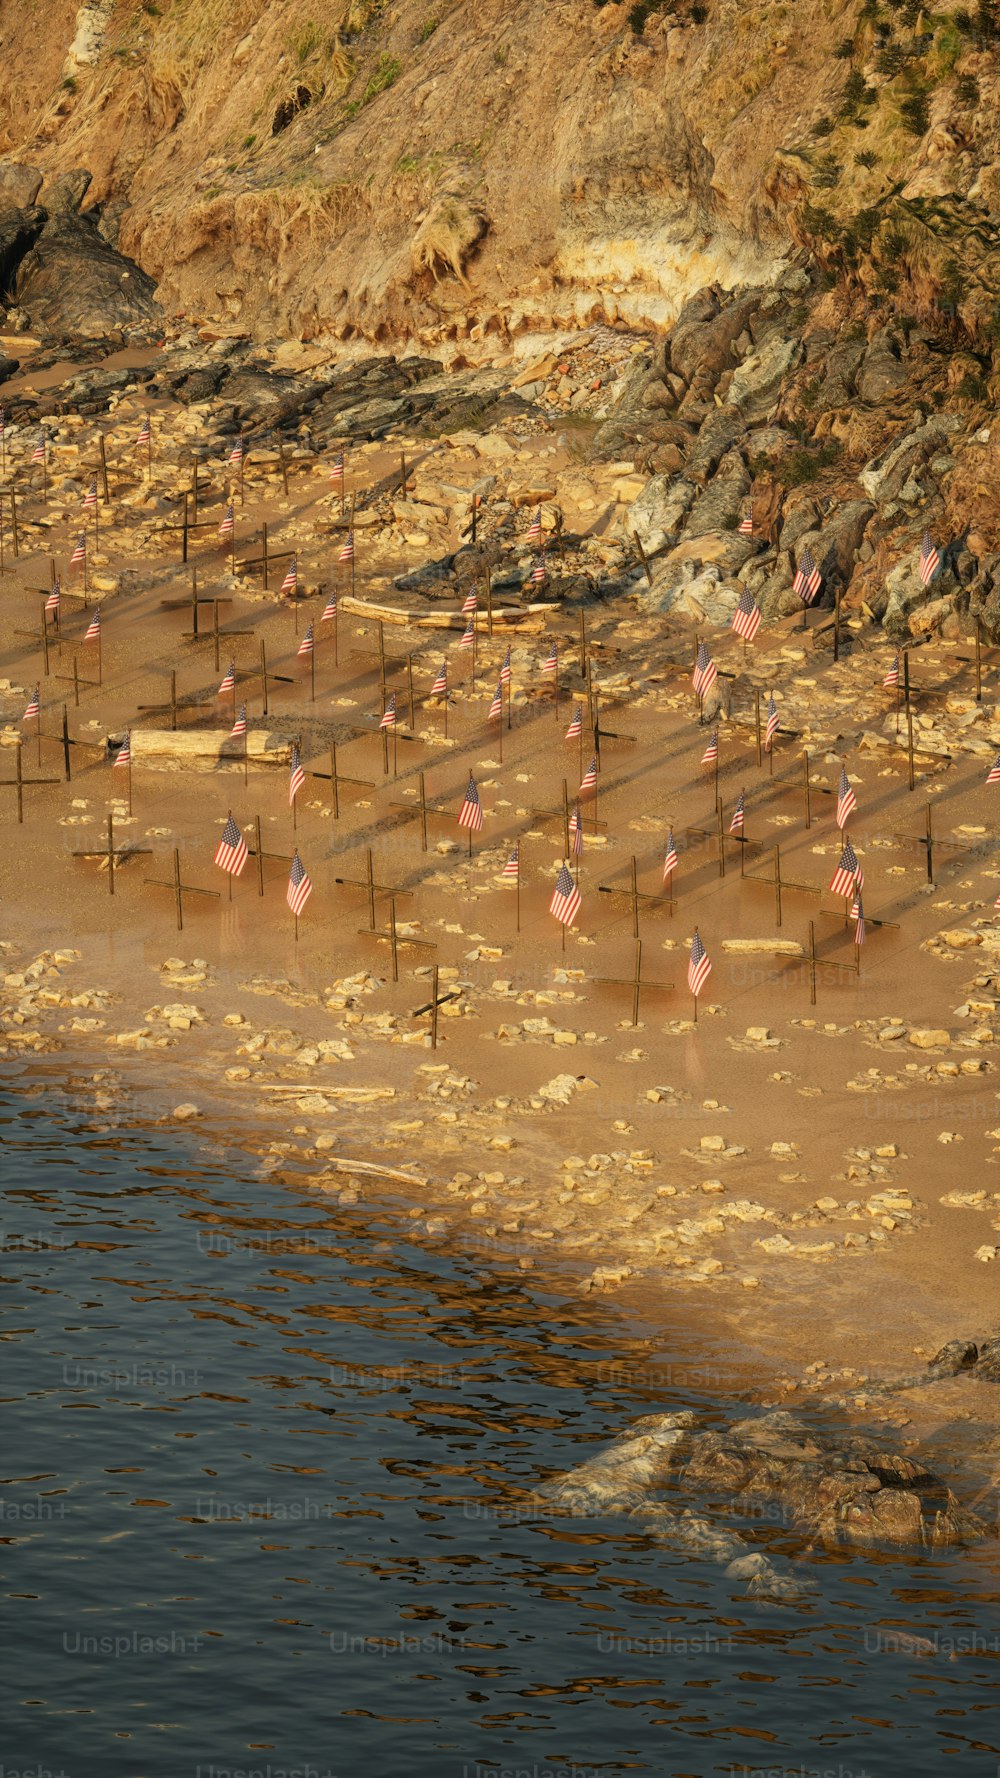 Uno stormo di fenicotteri in piedi sulla cima di una spiaggia sabbiosa